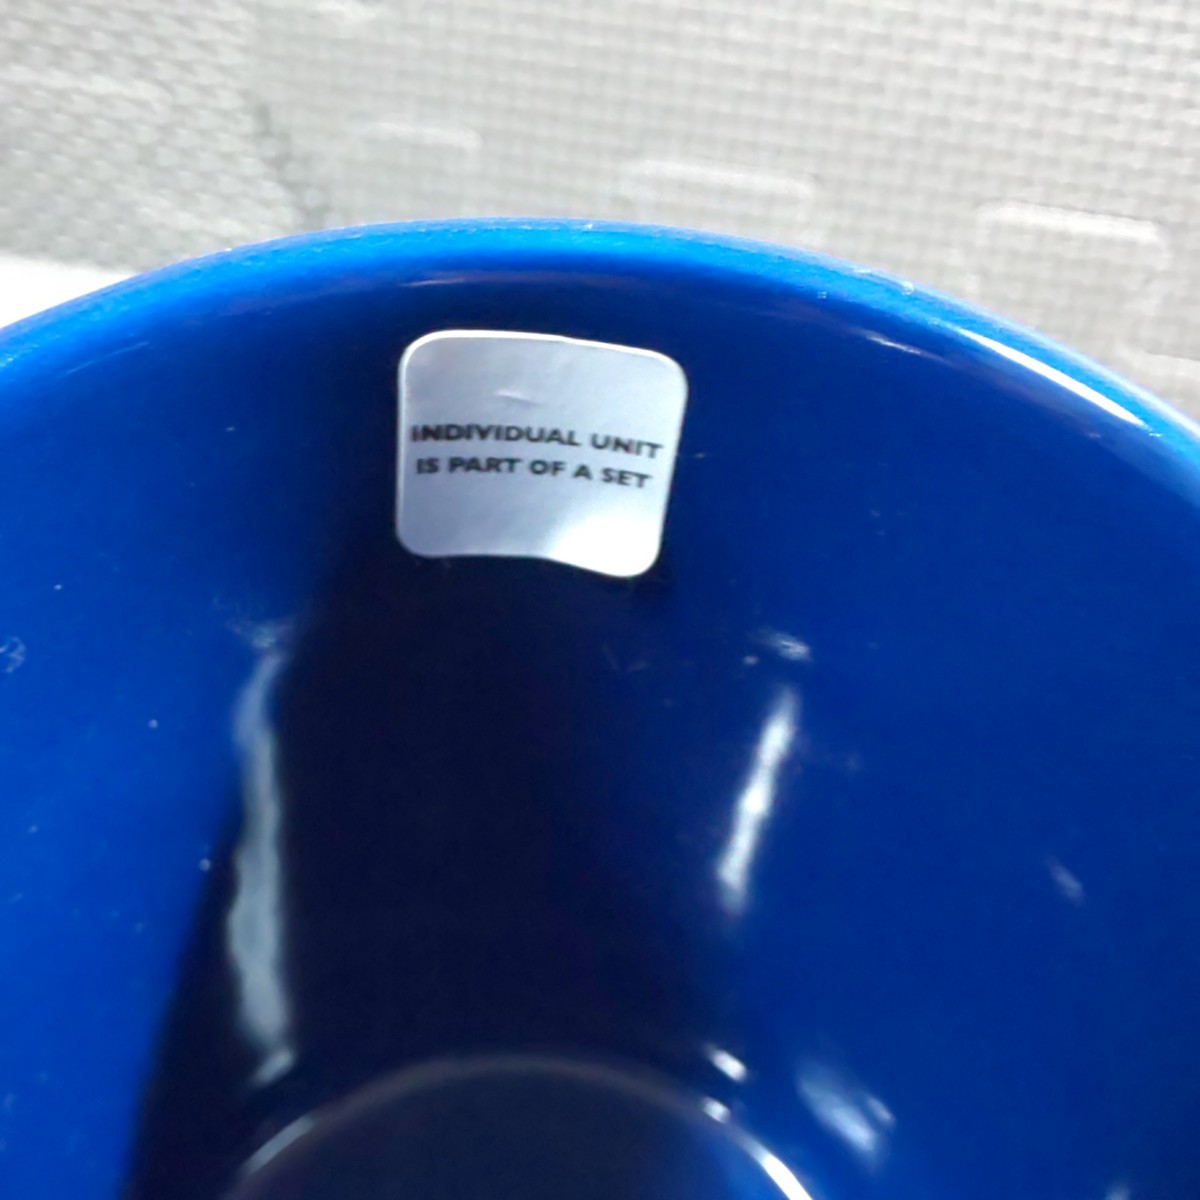 ケイトスペード「マグカップ 1個」陶器製 kete spade 紺色系 ケイト・スペード_画像7